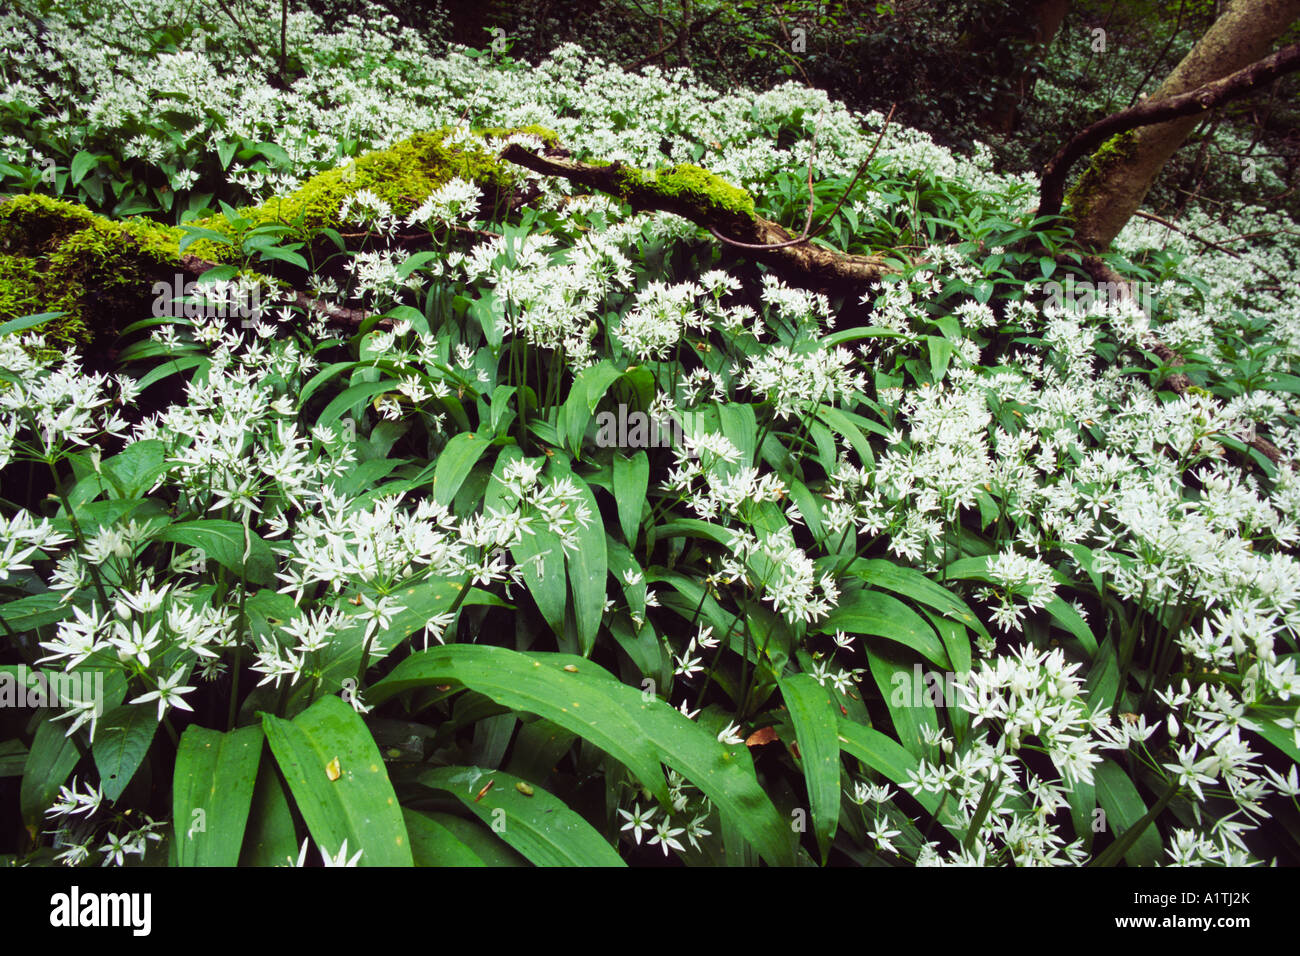 Bärlauch oder Bärlauch (Allium Ursinum) blühen im feuchten Niederwald Wald. Powys, Wales, UK. Stockfoto